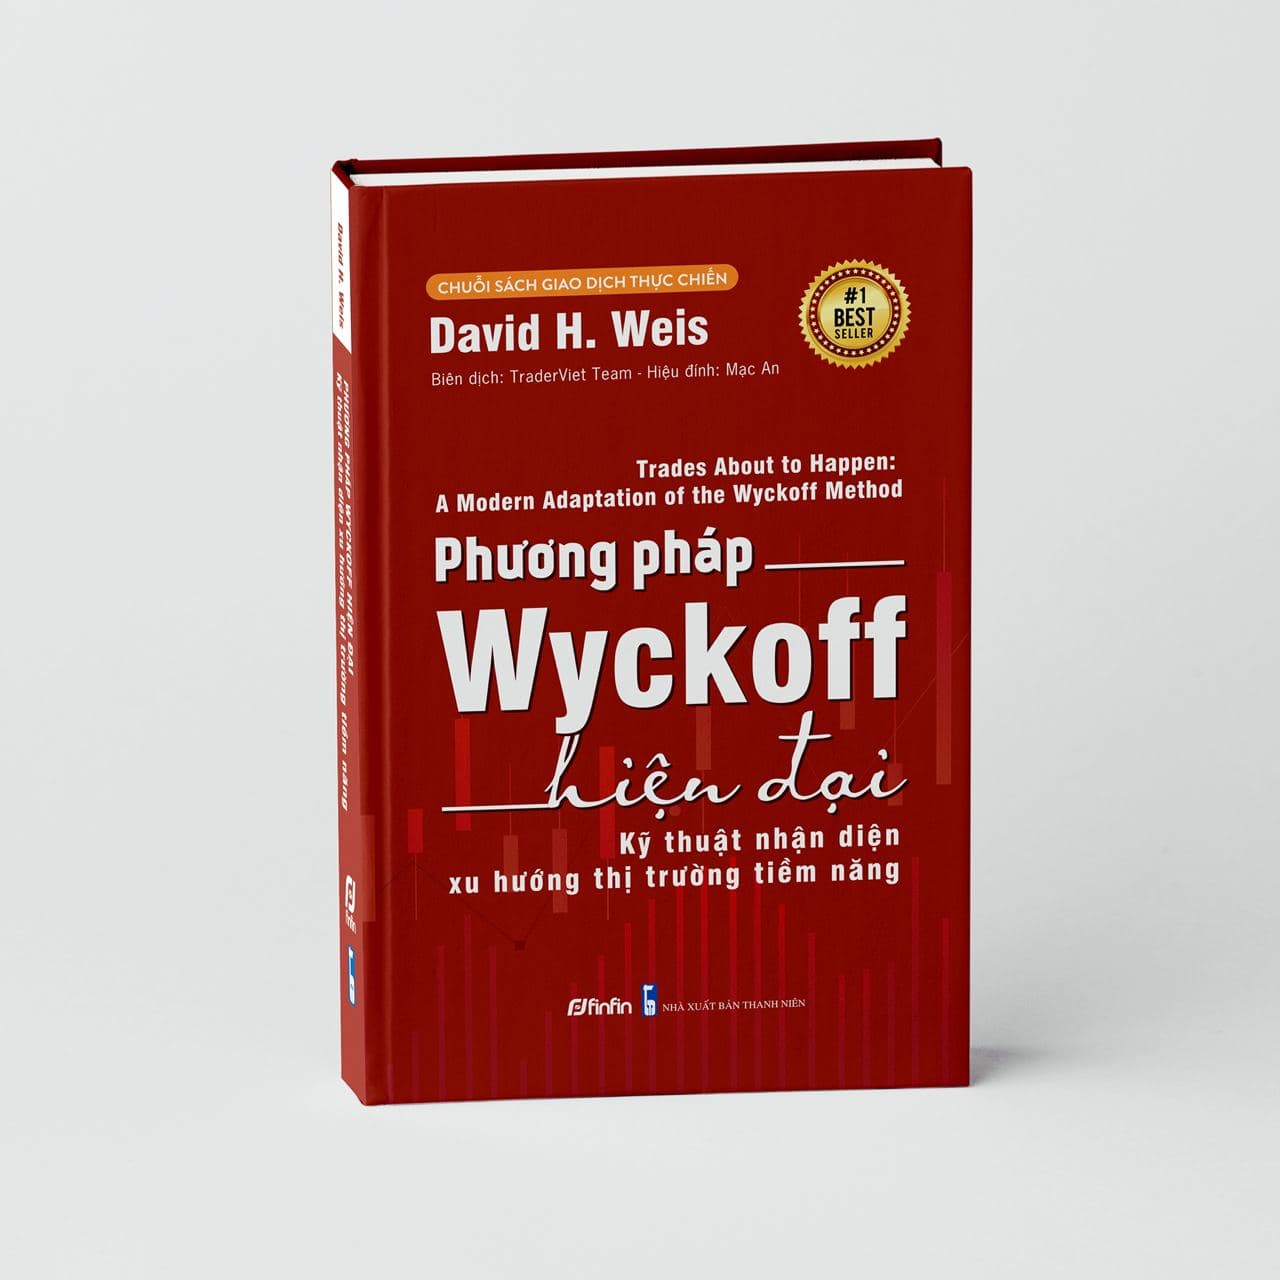 VSA là gì? Sách phương pháp VSA Wyckoff hiện đại